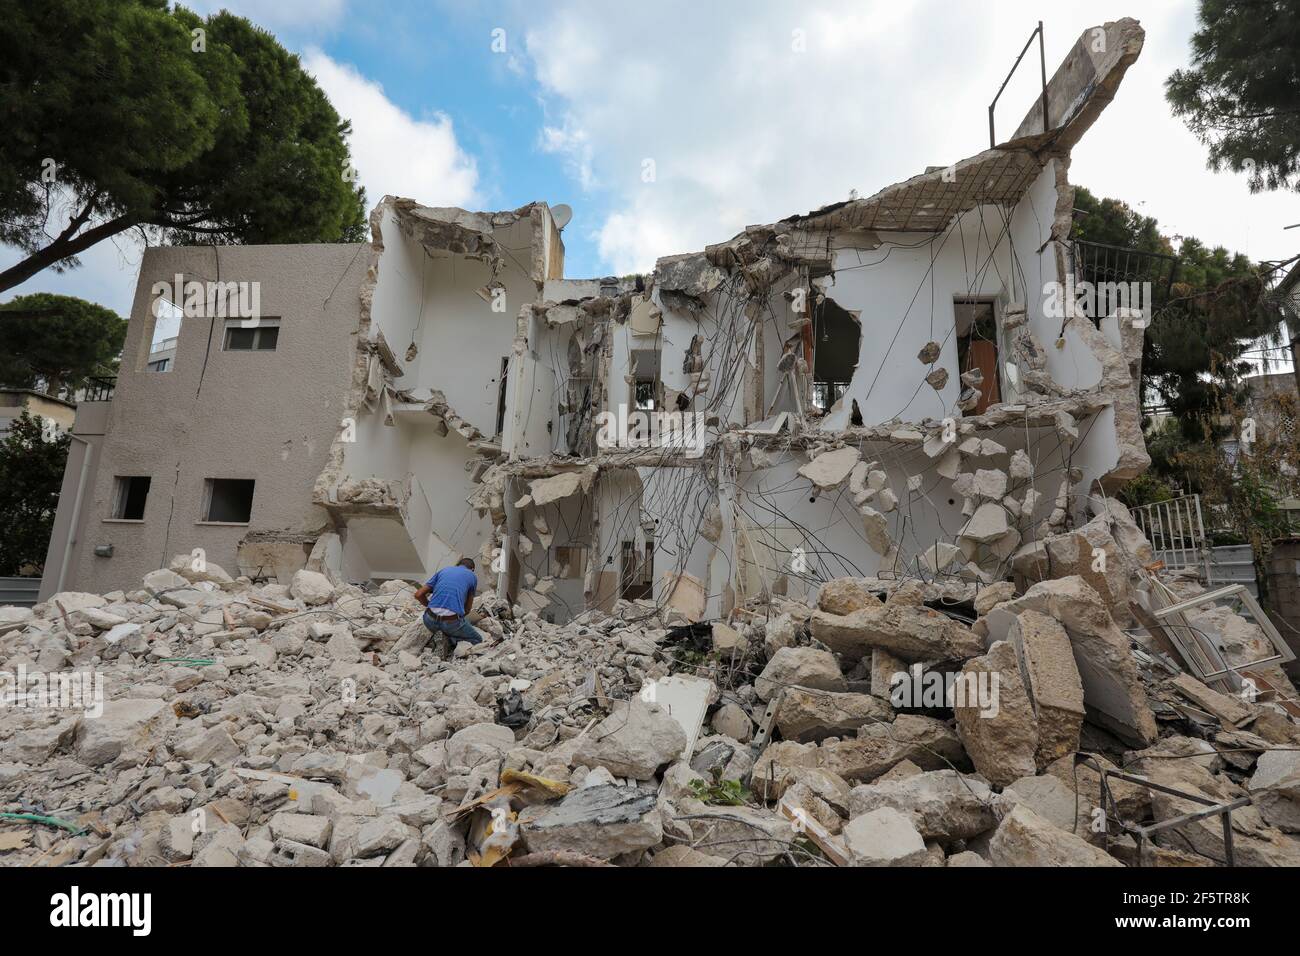 Mann kniet vor dem zerbrochenen Haus auf Ruine Abriss Ort nach der Zerstörung. Stockfoto